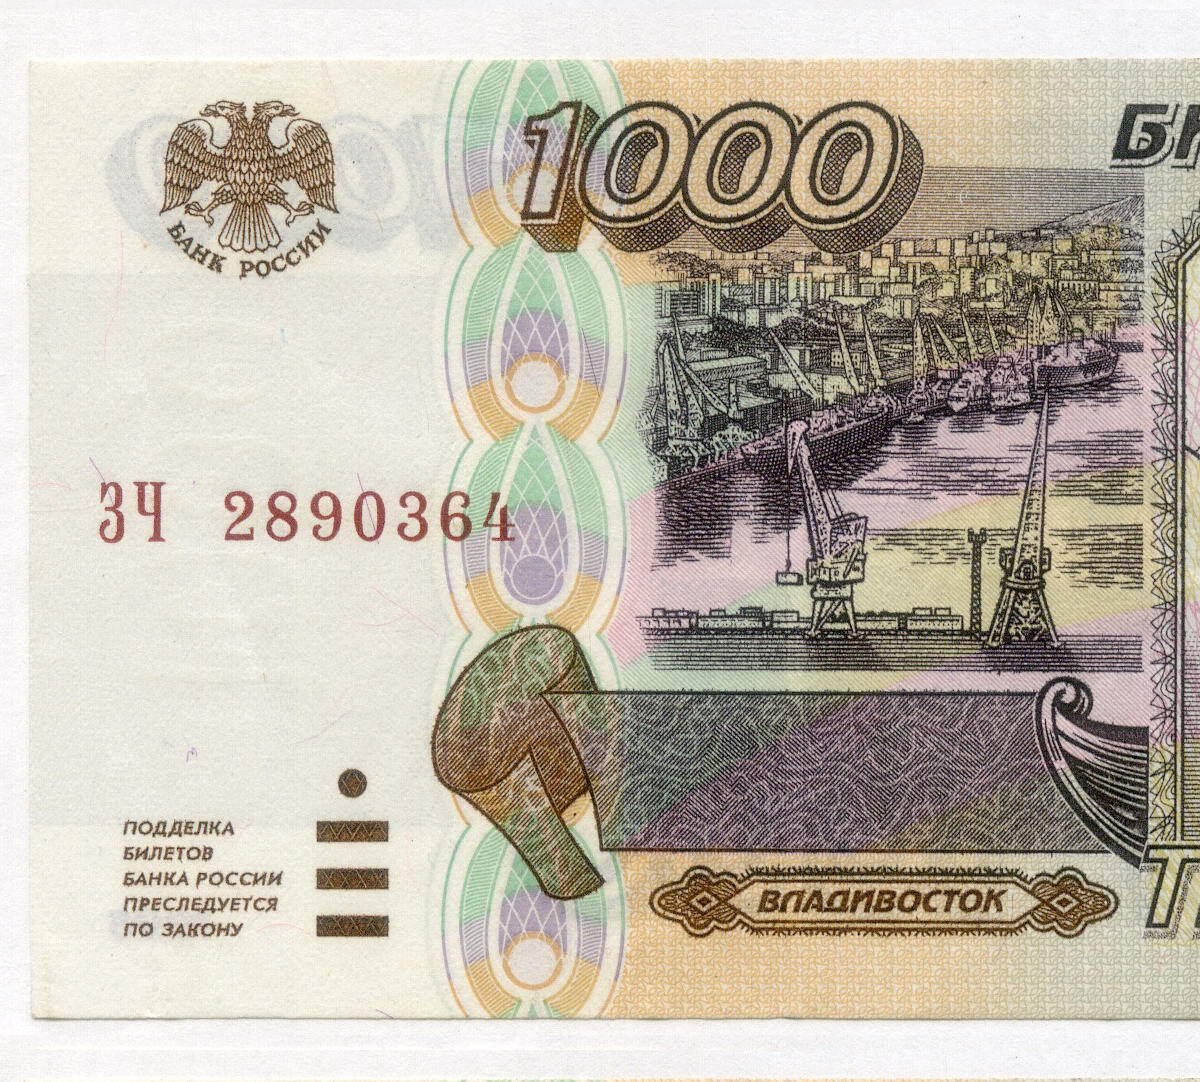 1000 Рублей 1995 года. Банкнота 1000 рублей 1995 года. Тысяча рублей 1995 года. Купюра 1000 рублей 1995 года.